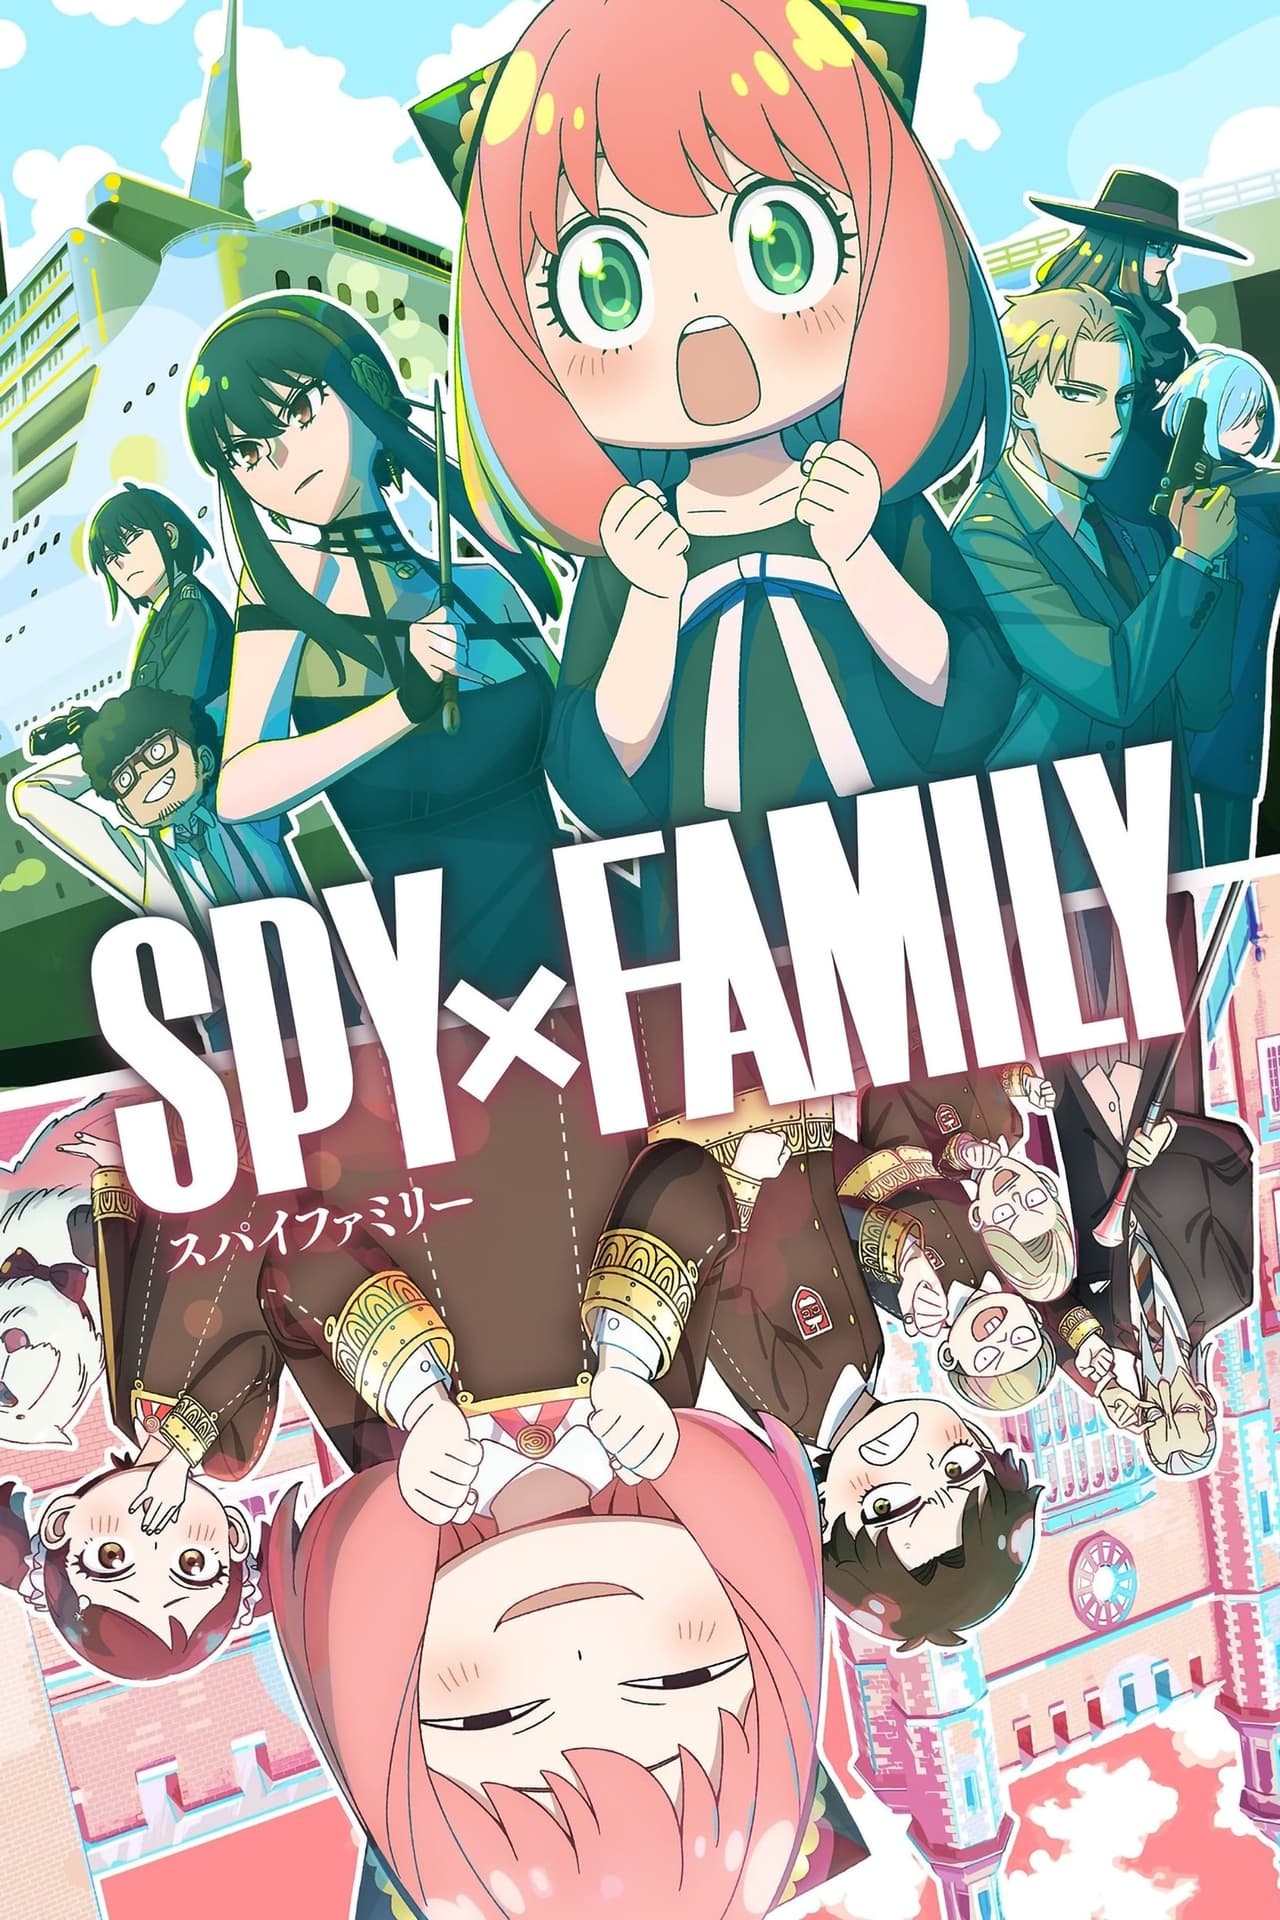 Assistir Spy x Family 2x11 Online - Youcine